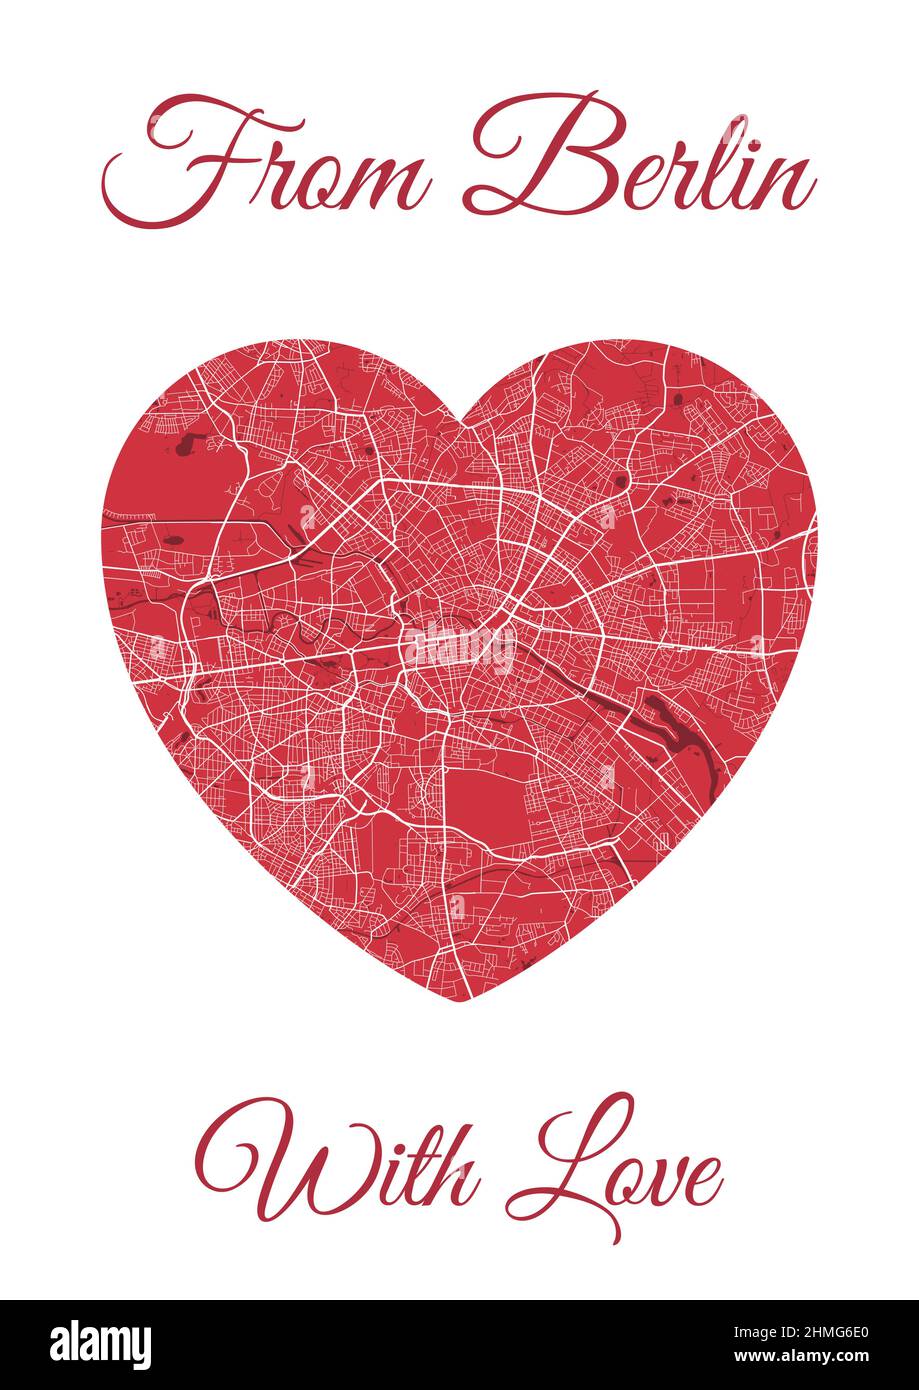 Da Berlino con carta d'amore, mappa della città a forma di cuore. Immagine vettoriale verticale a A4 colori rossi. Amore città viaggio paesaggio urbano. Illustrazione Vettoriale